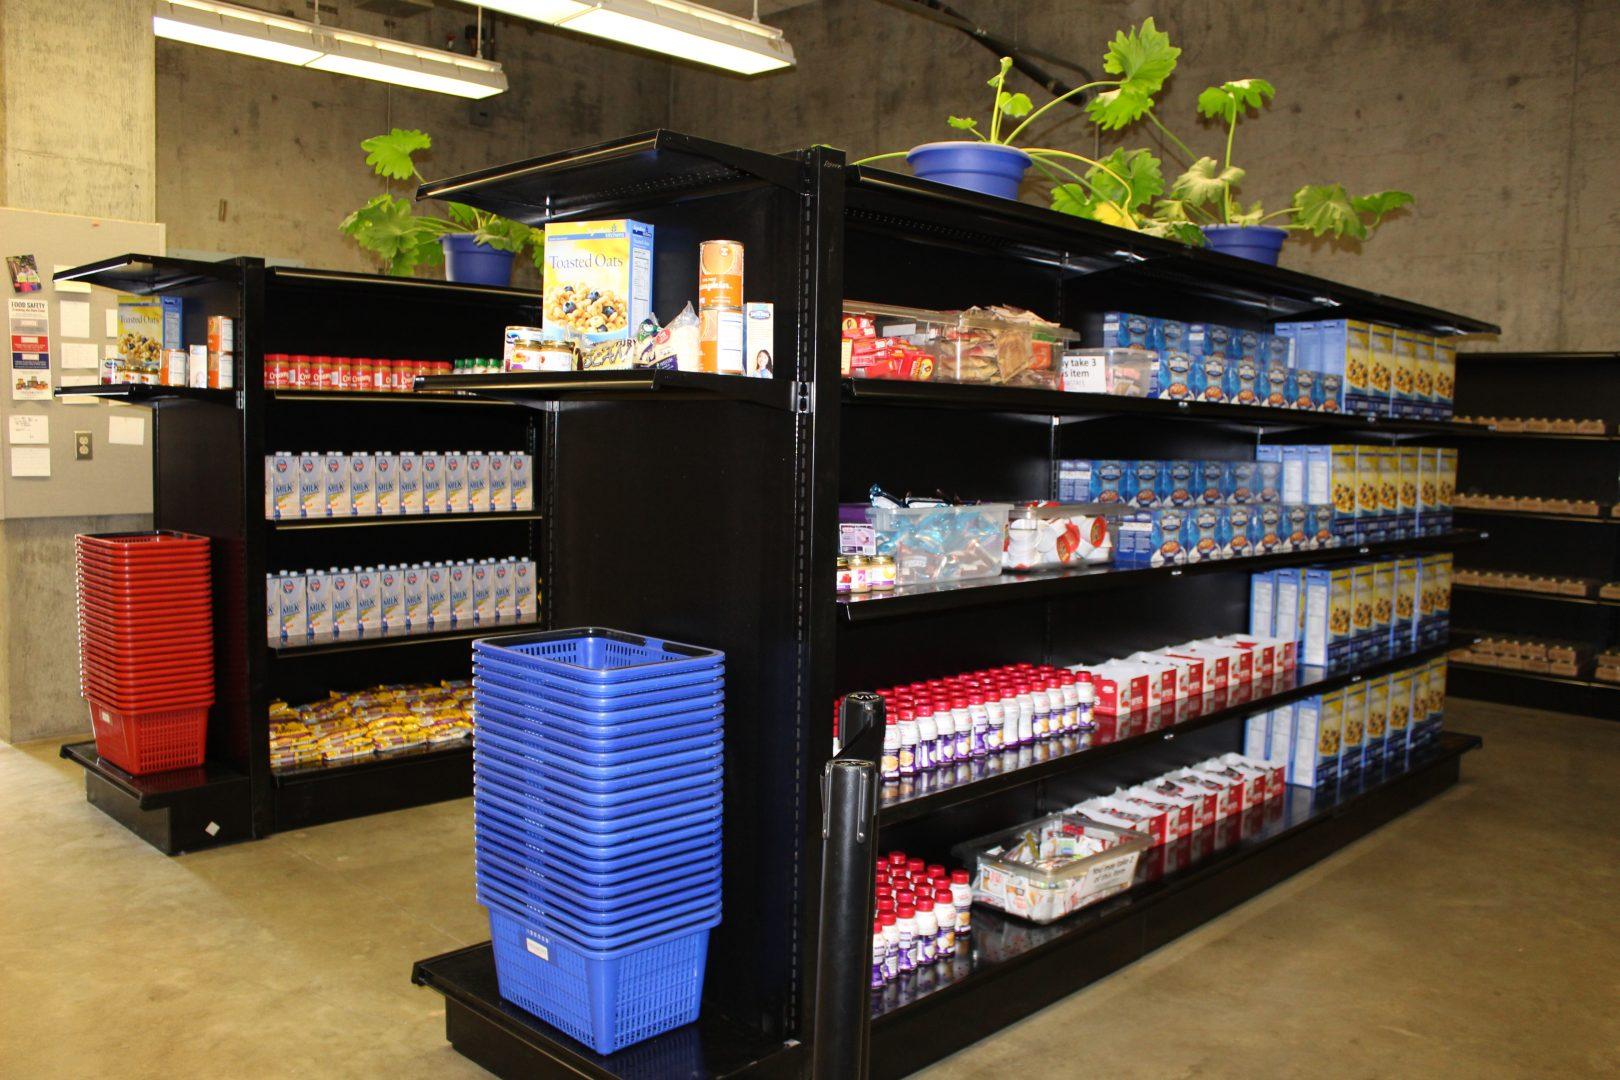 Inside look at student cupboard (Jessica Medina/Food Security Project Coordinator)